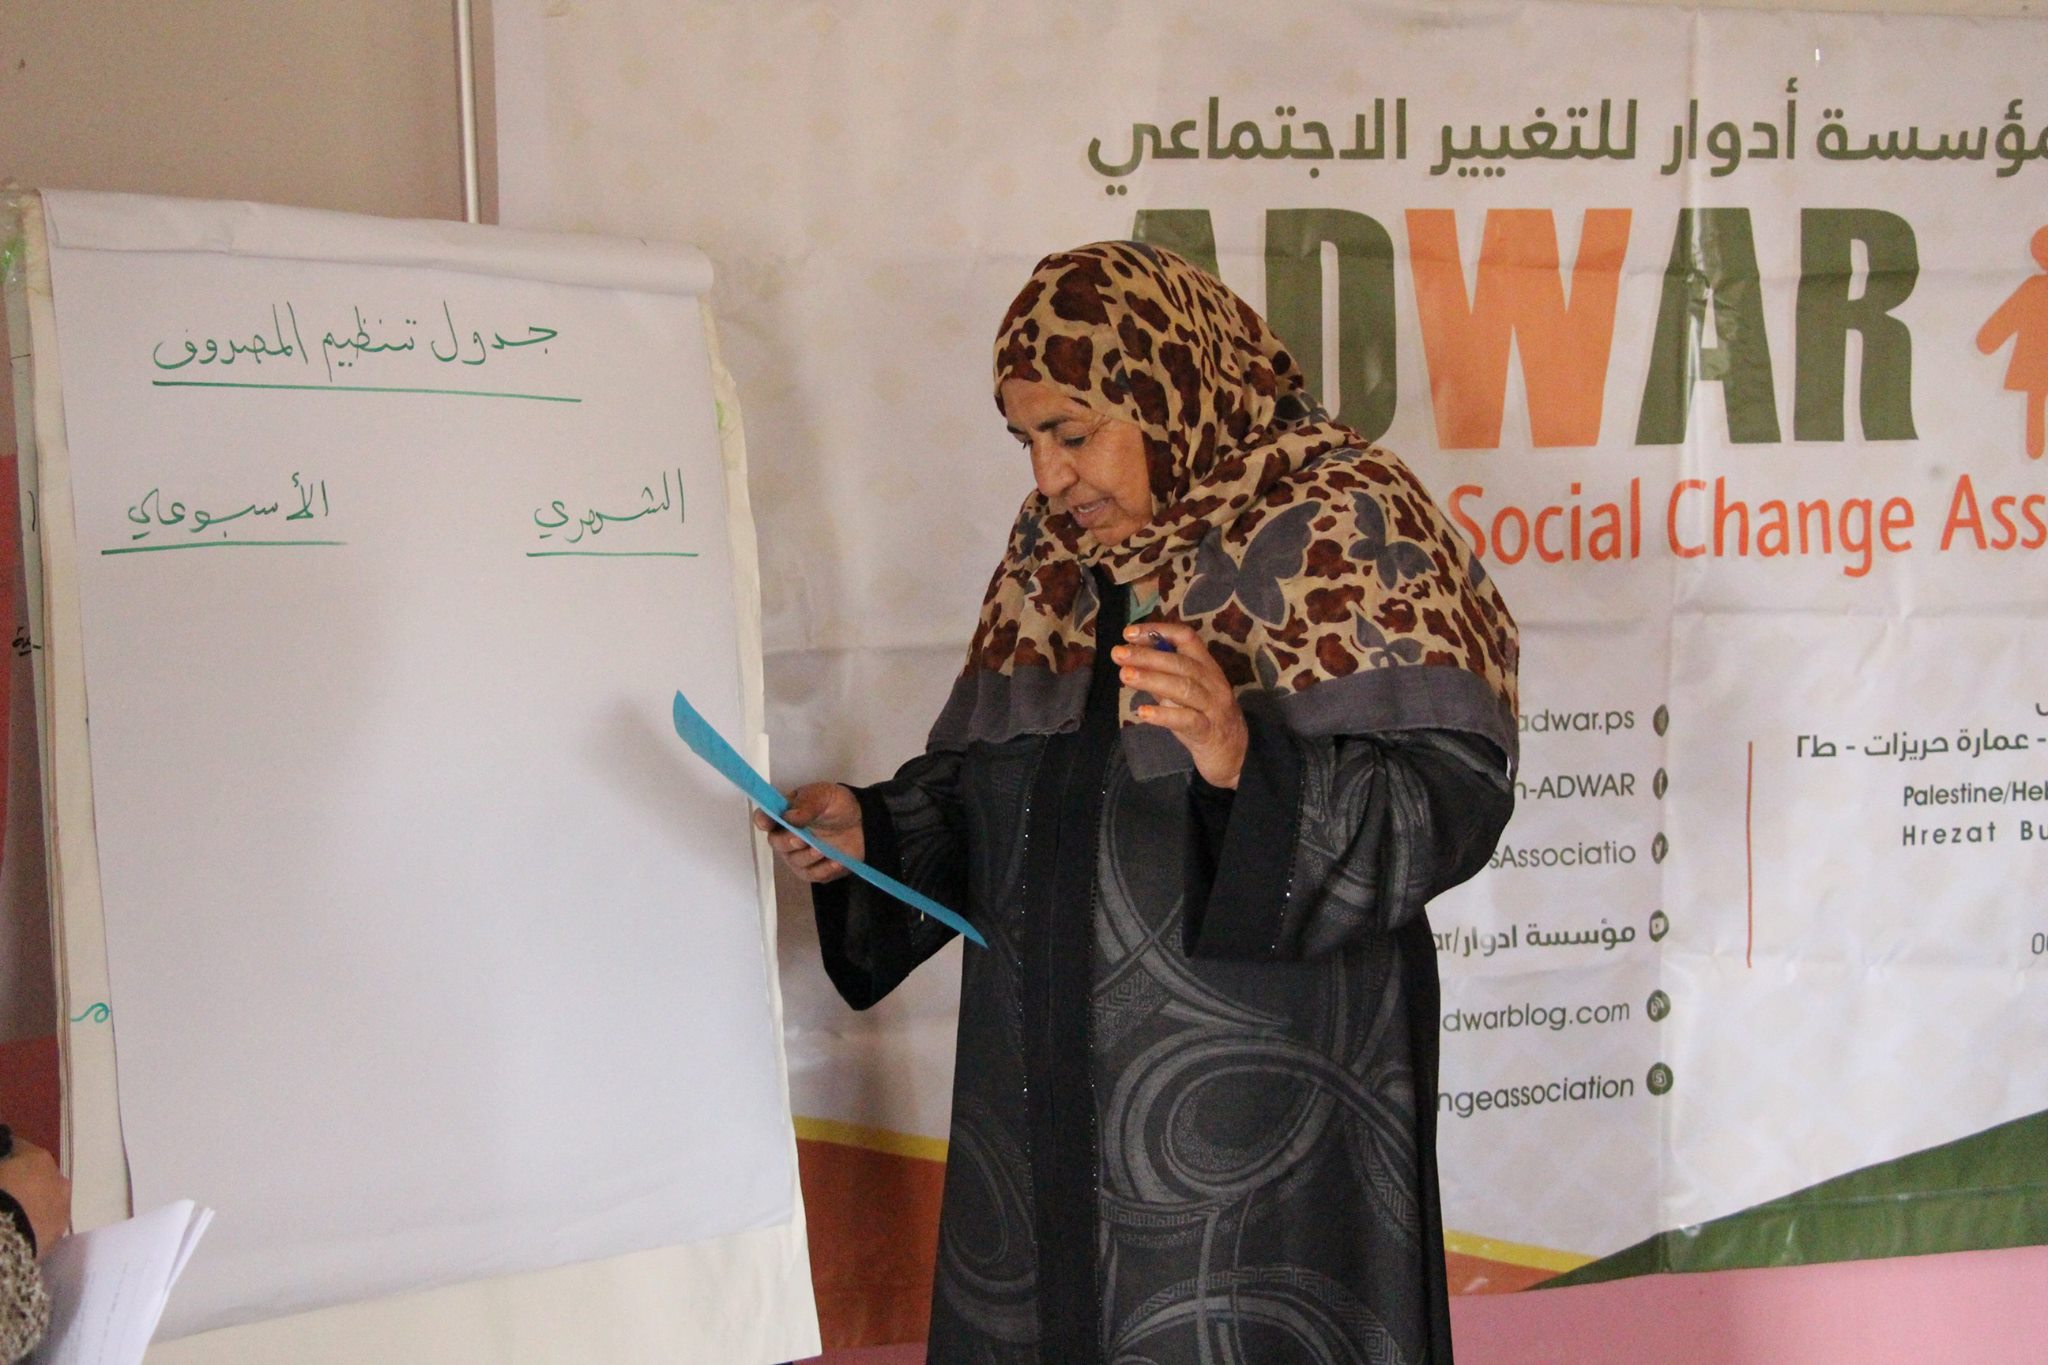  تواصل مؤسسة ادوار  المرحلة الثانية من مراحل مشروع (دعم النساء البدويات والريفيات لانشاء وادارة المشاريع المدرّة للدخل)